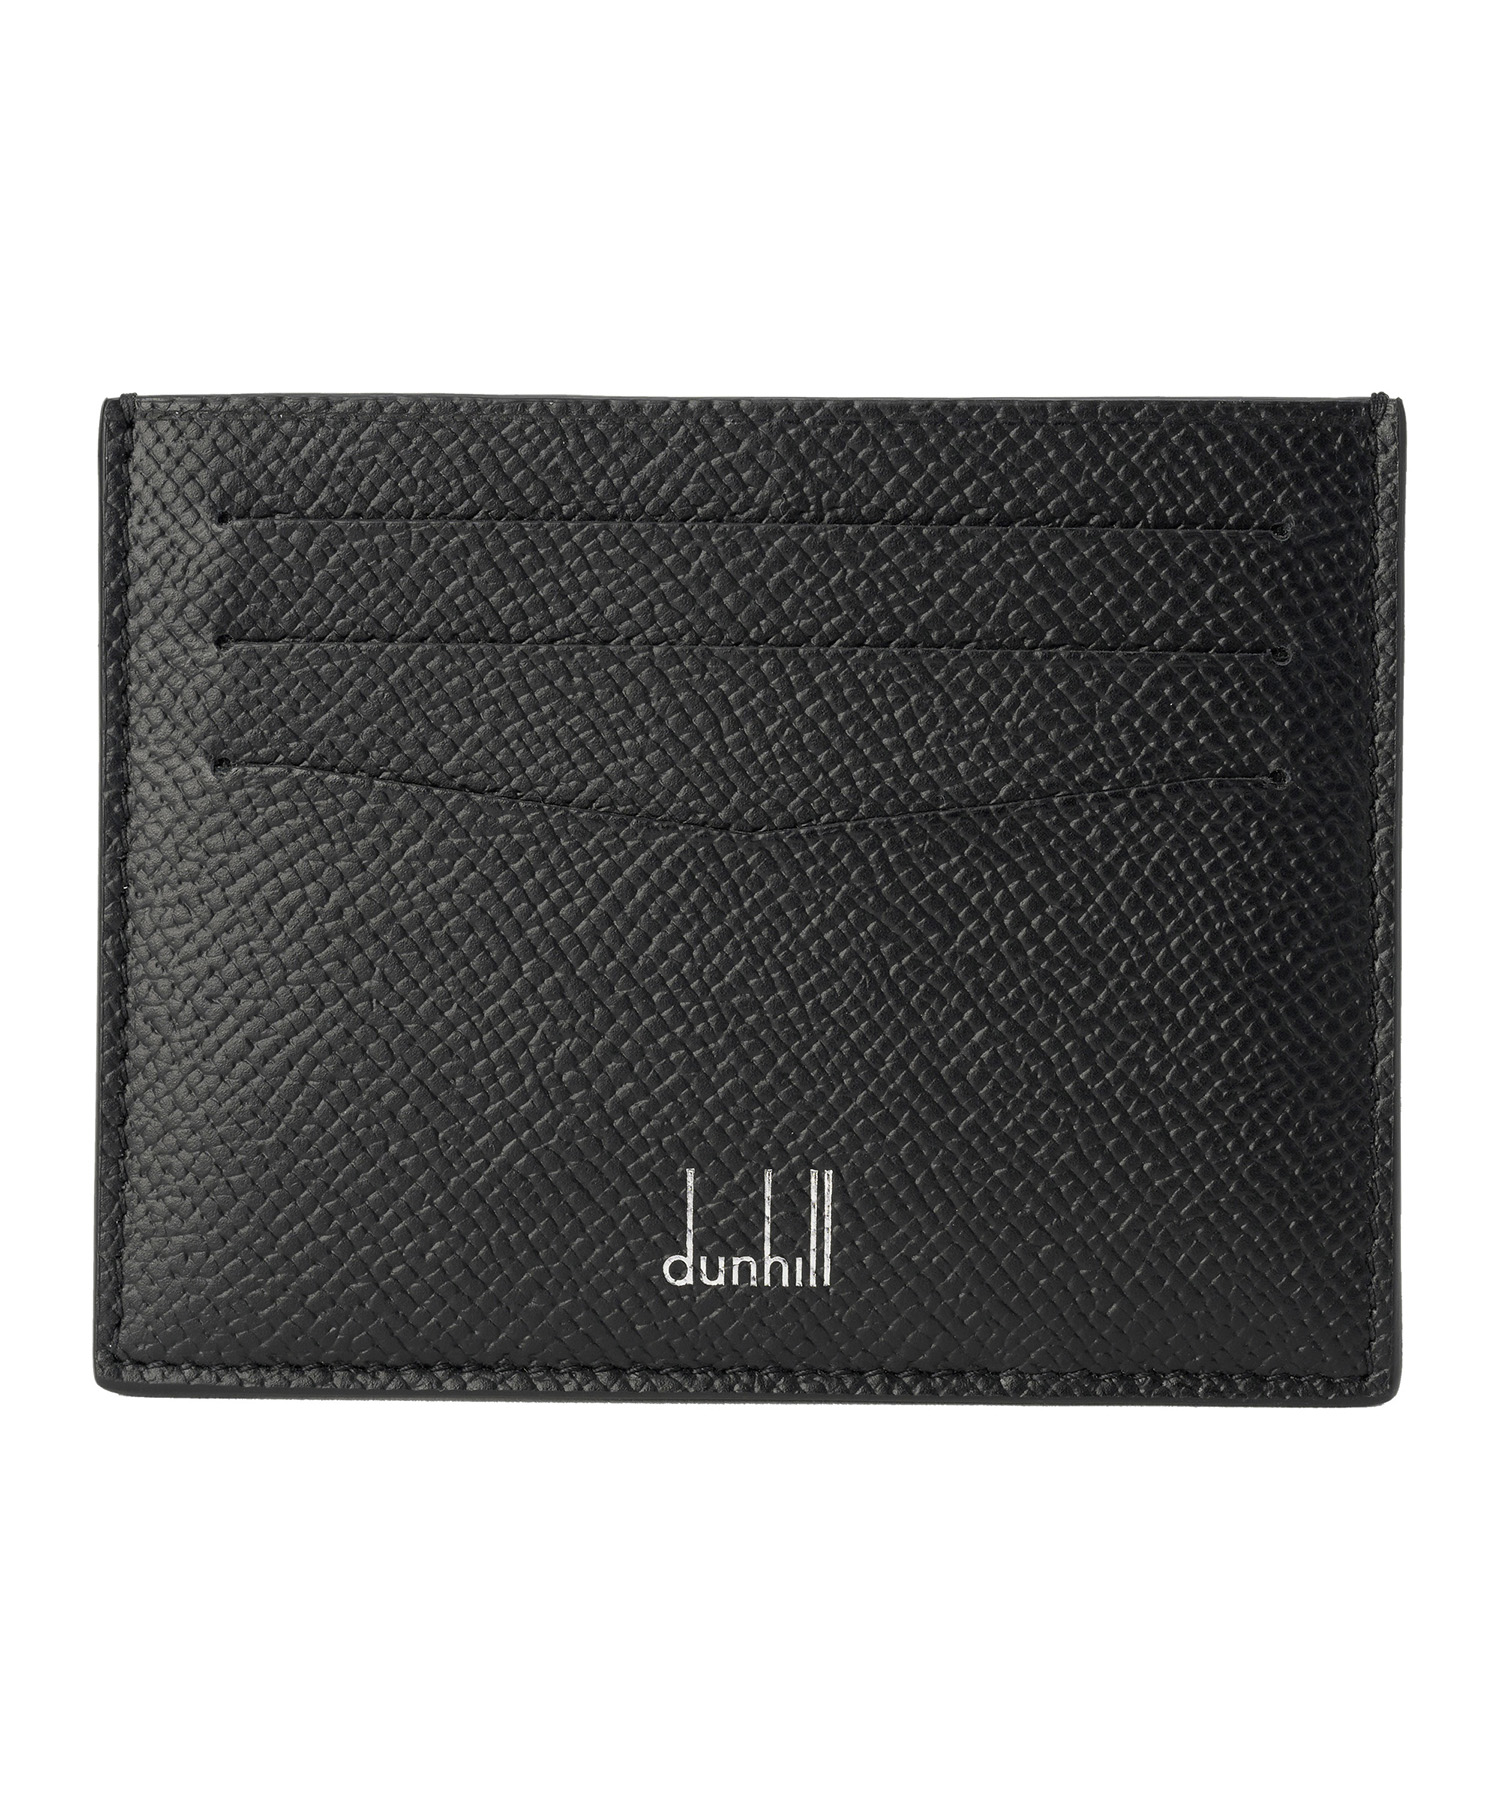 dunhill ダンヒル カードケース DU18F220CCA001